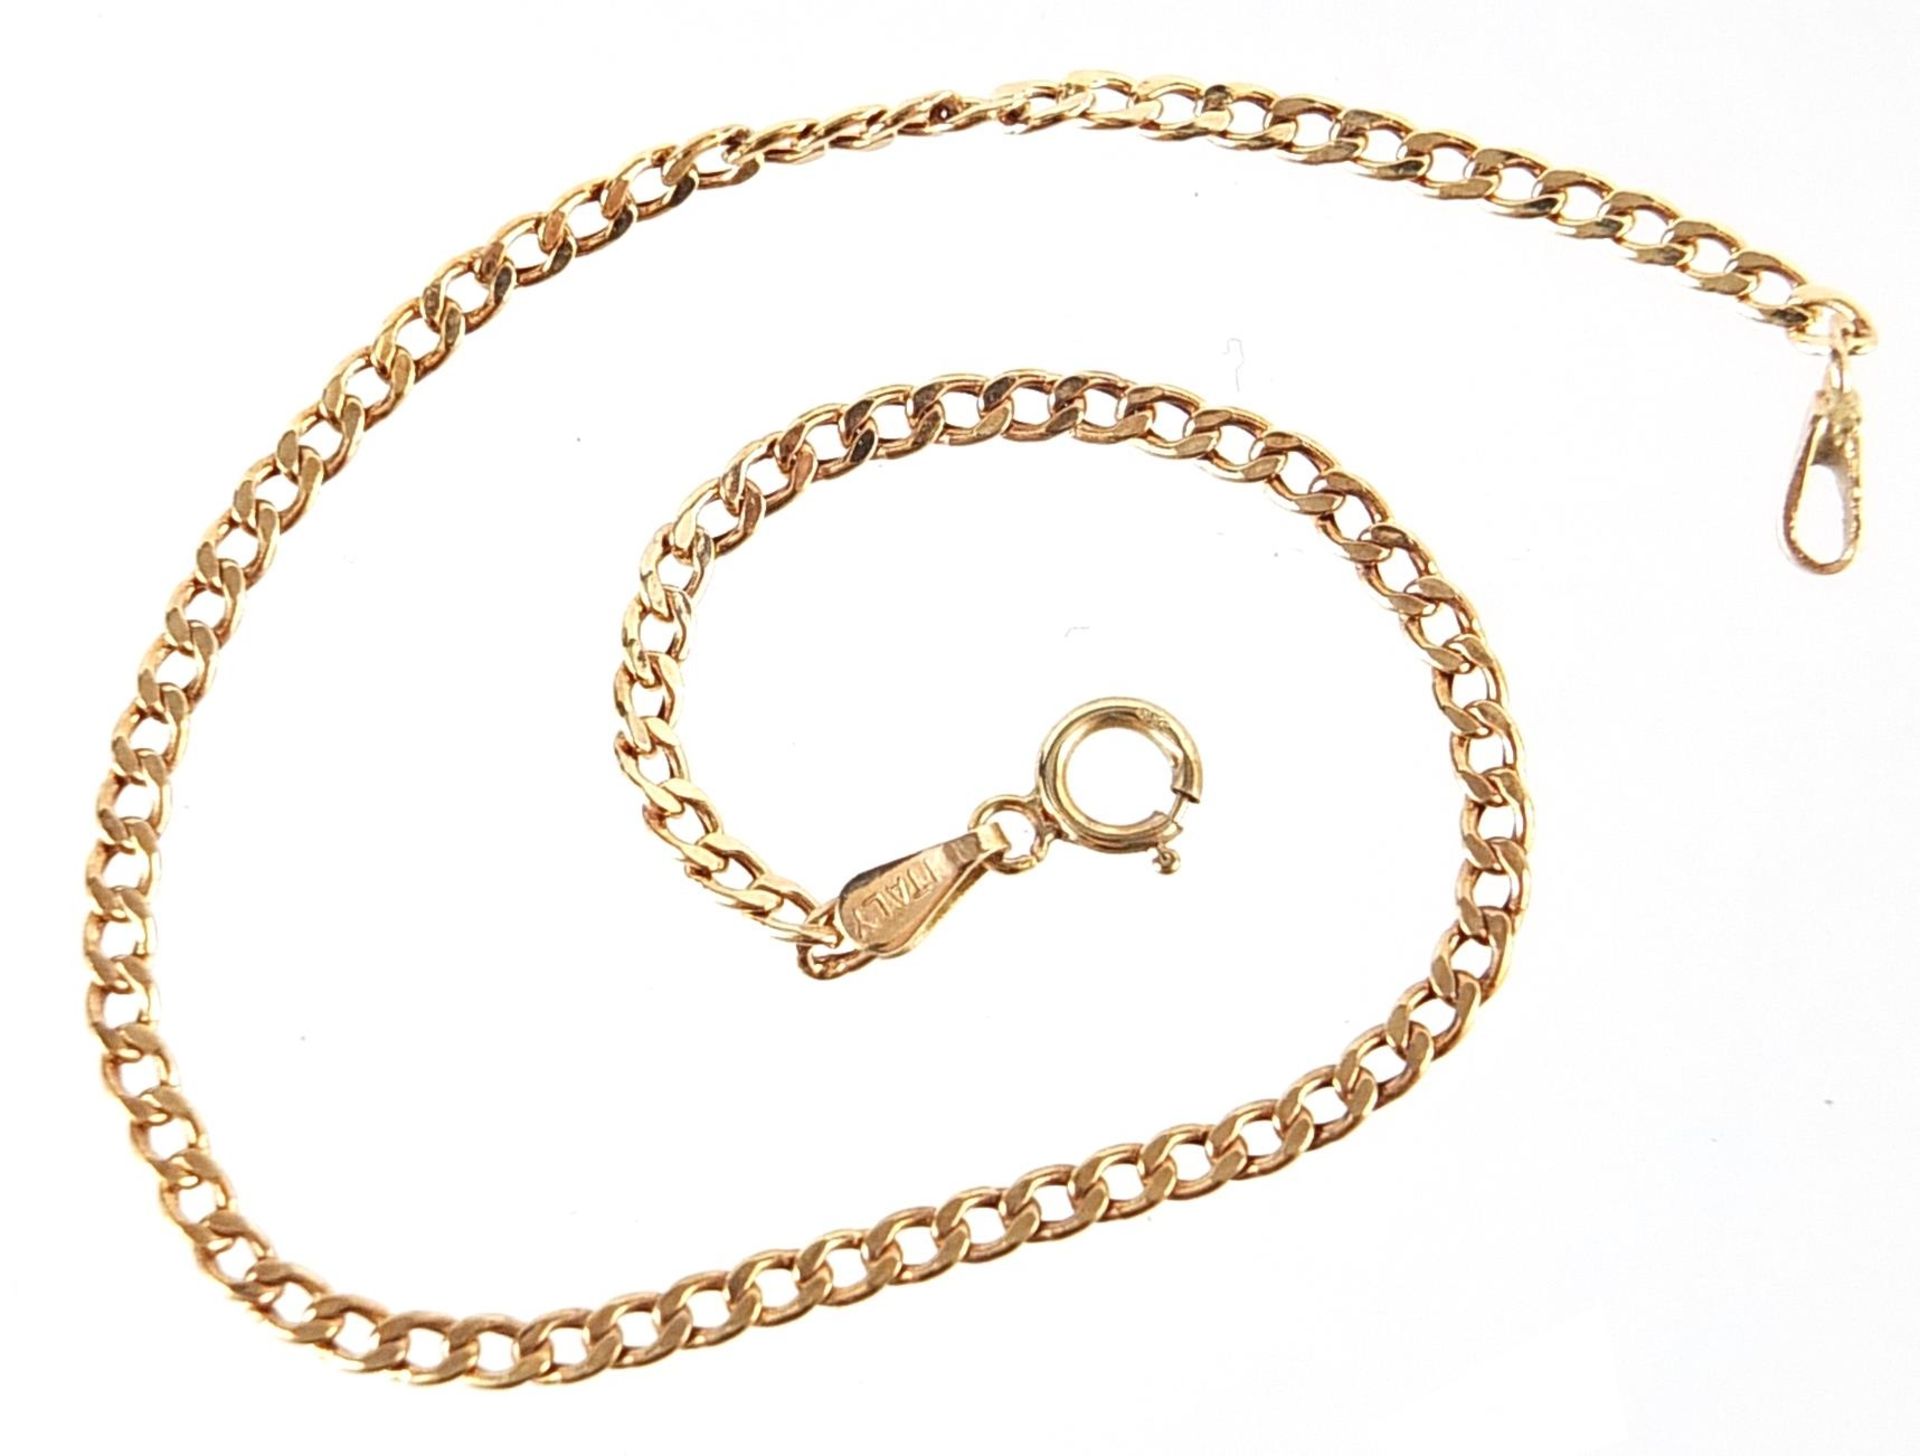 9ct gold curb link bracelet, 18cm in length, 1.0g - Image 3 of 3